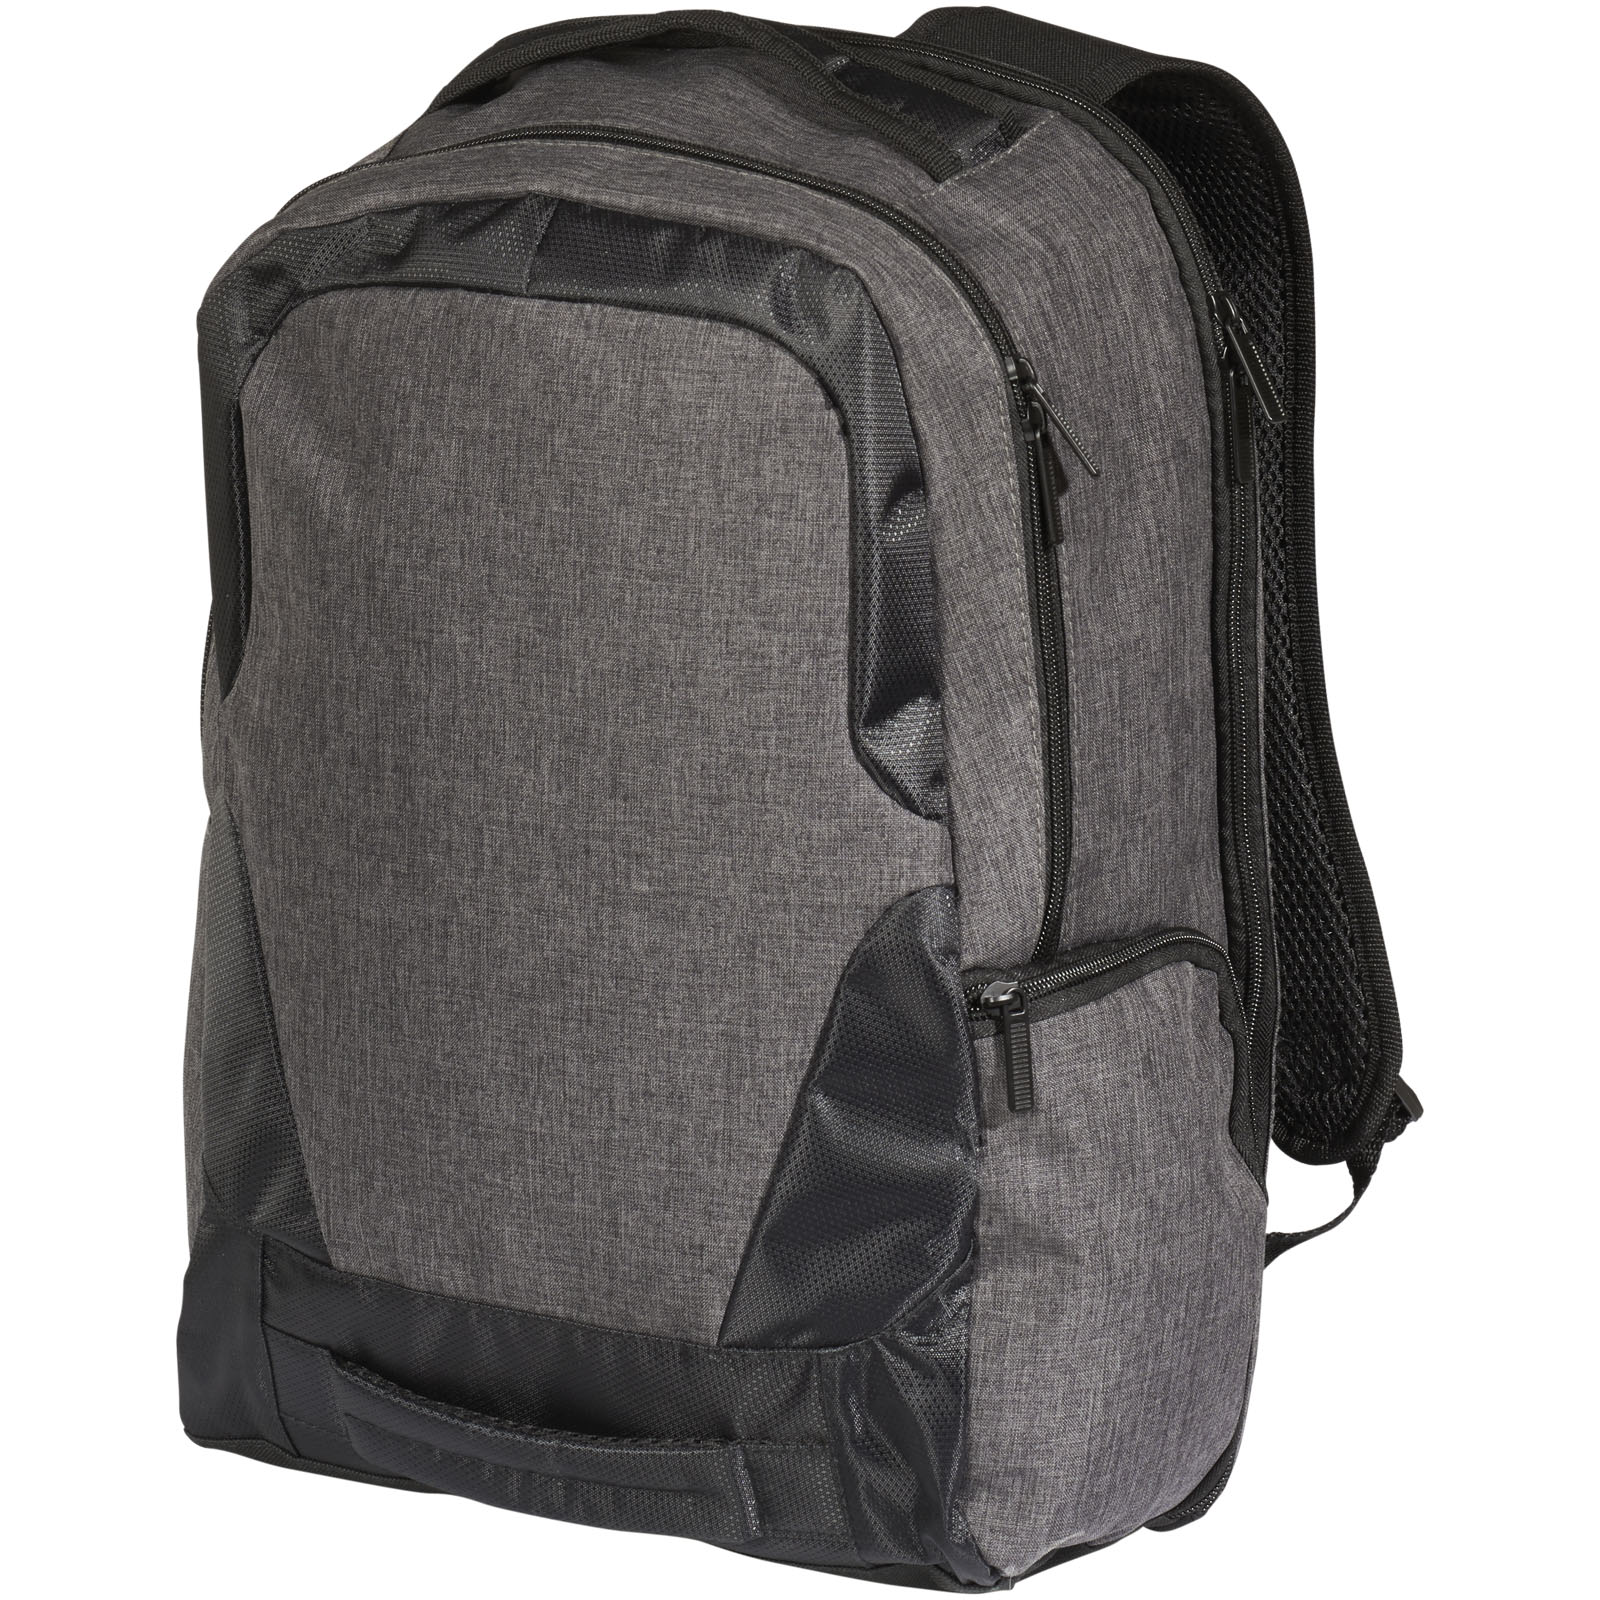 Polyesterový batoh na 17palcový notebook LACKS s USB portem - charcoal